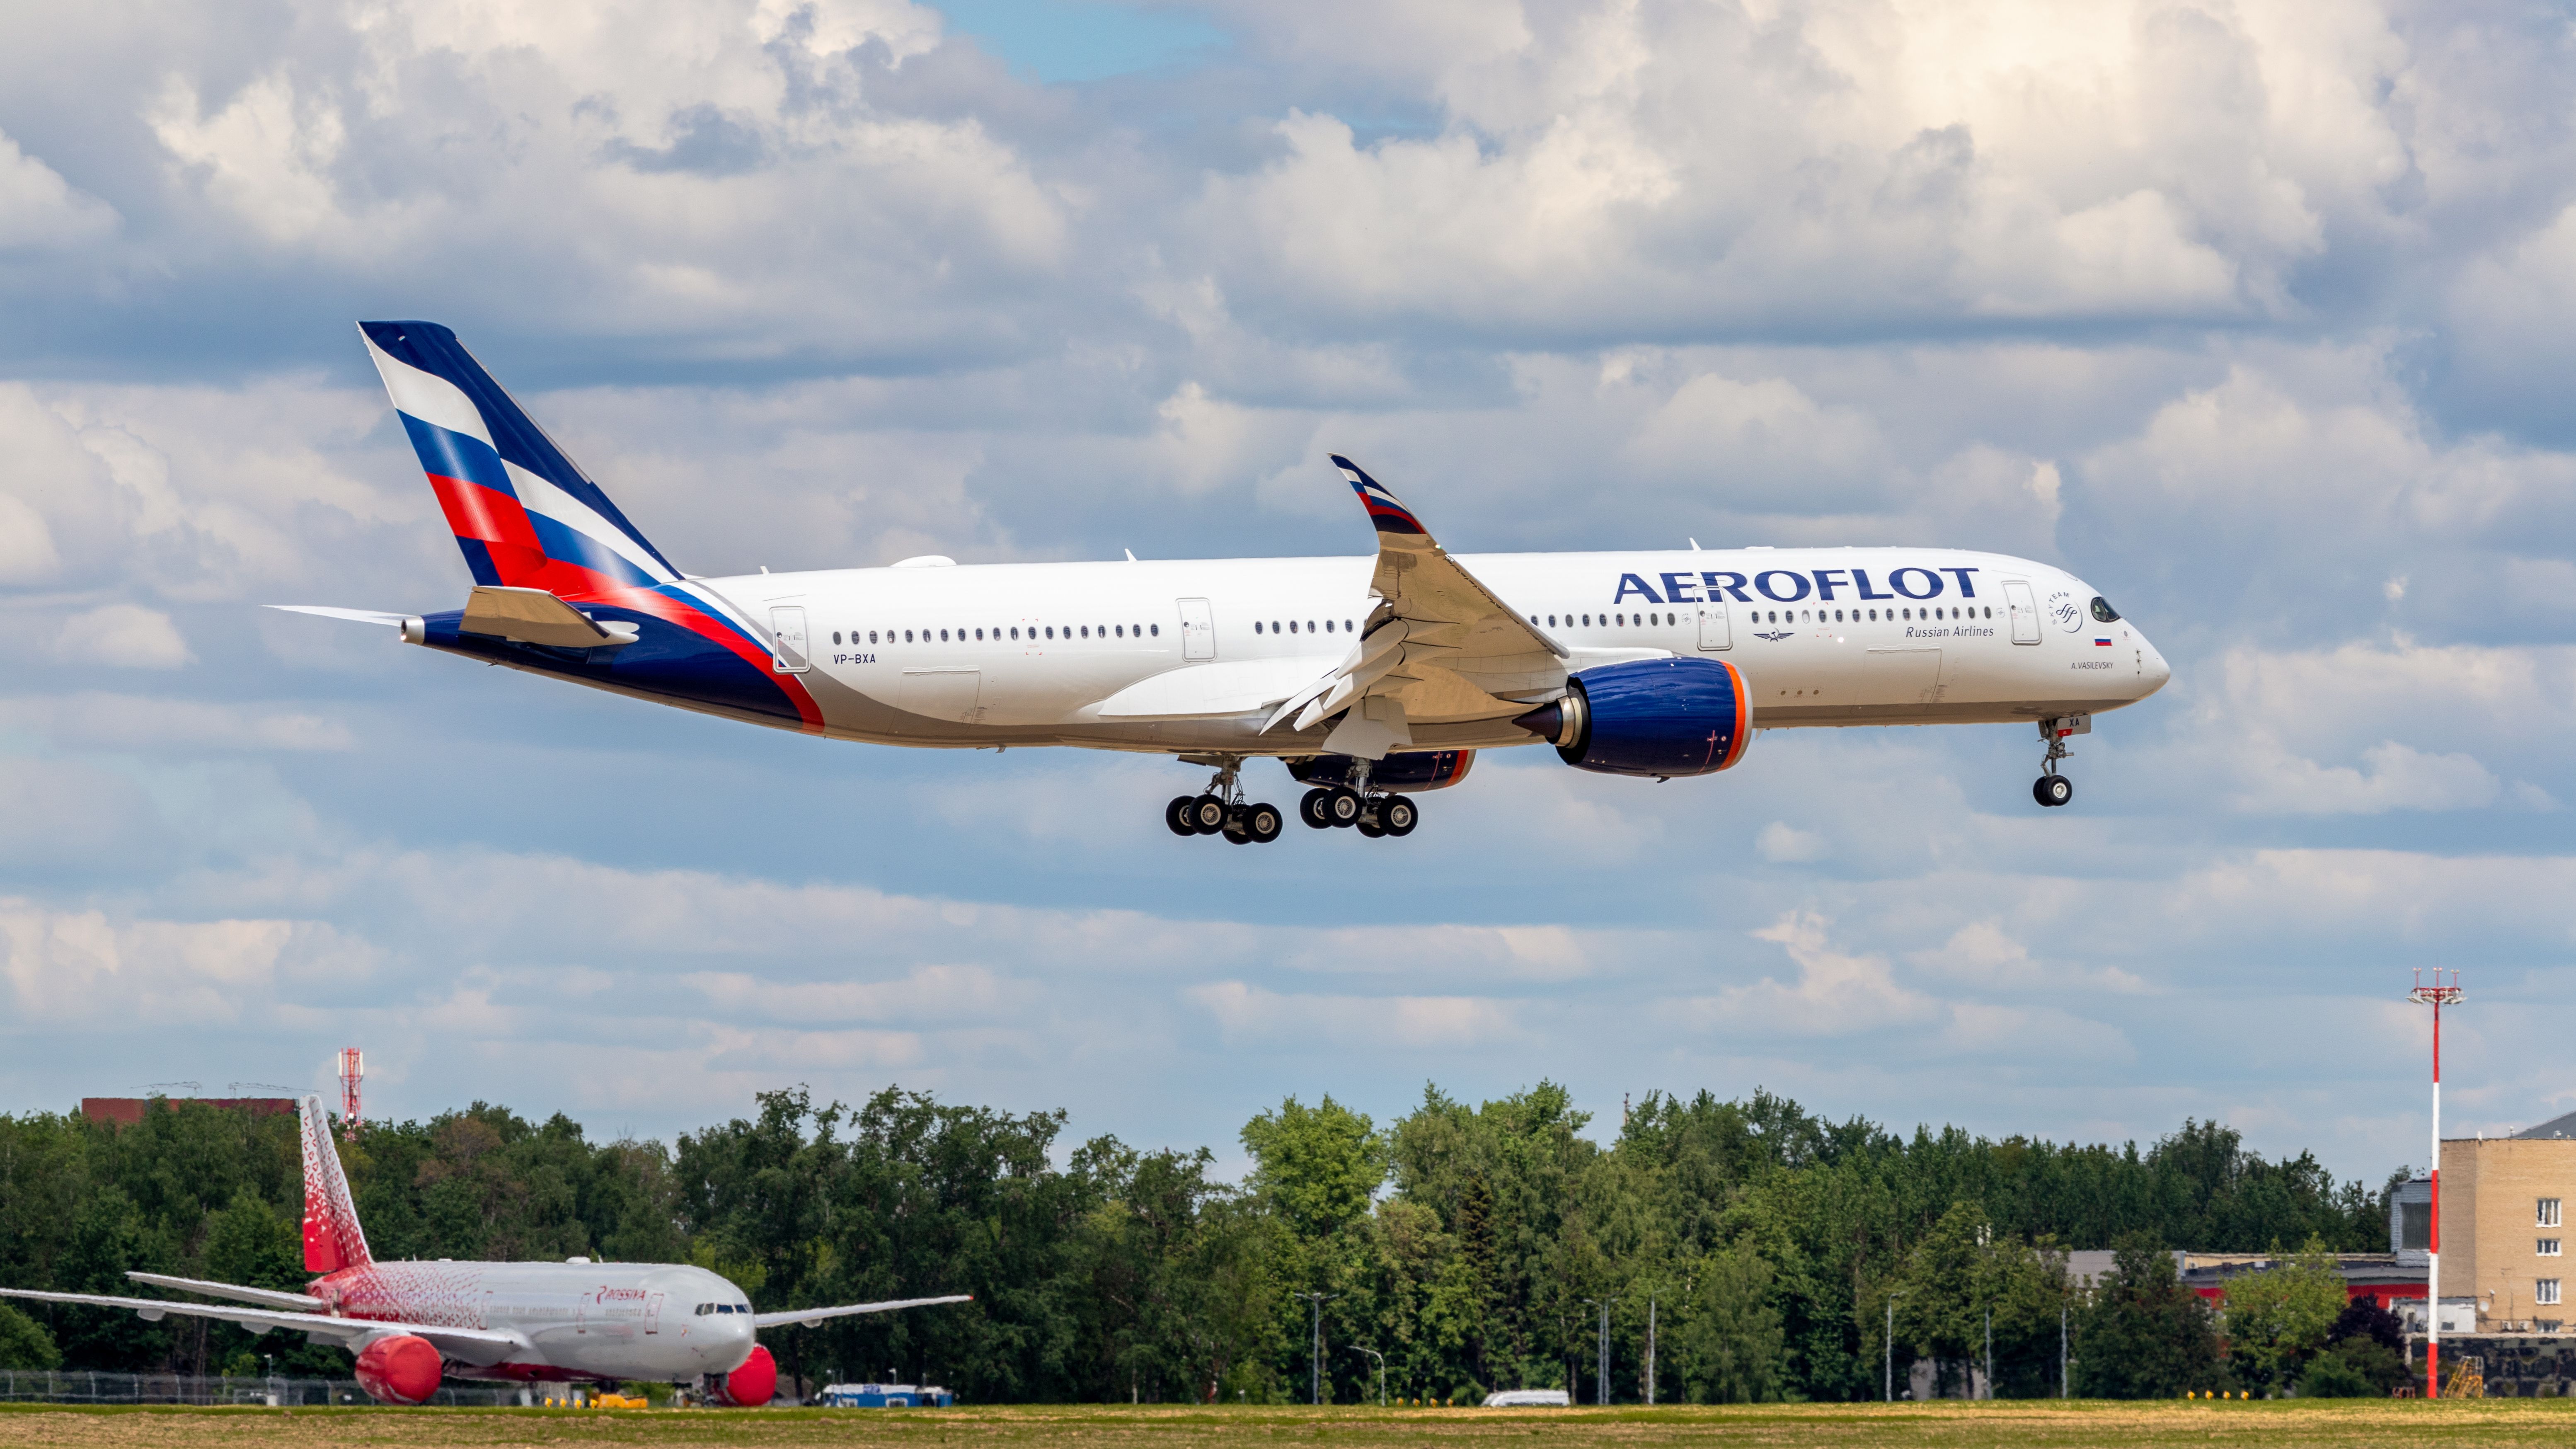 aeroflot and rossiya planes at airport